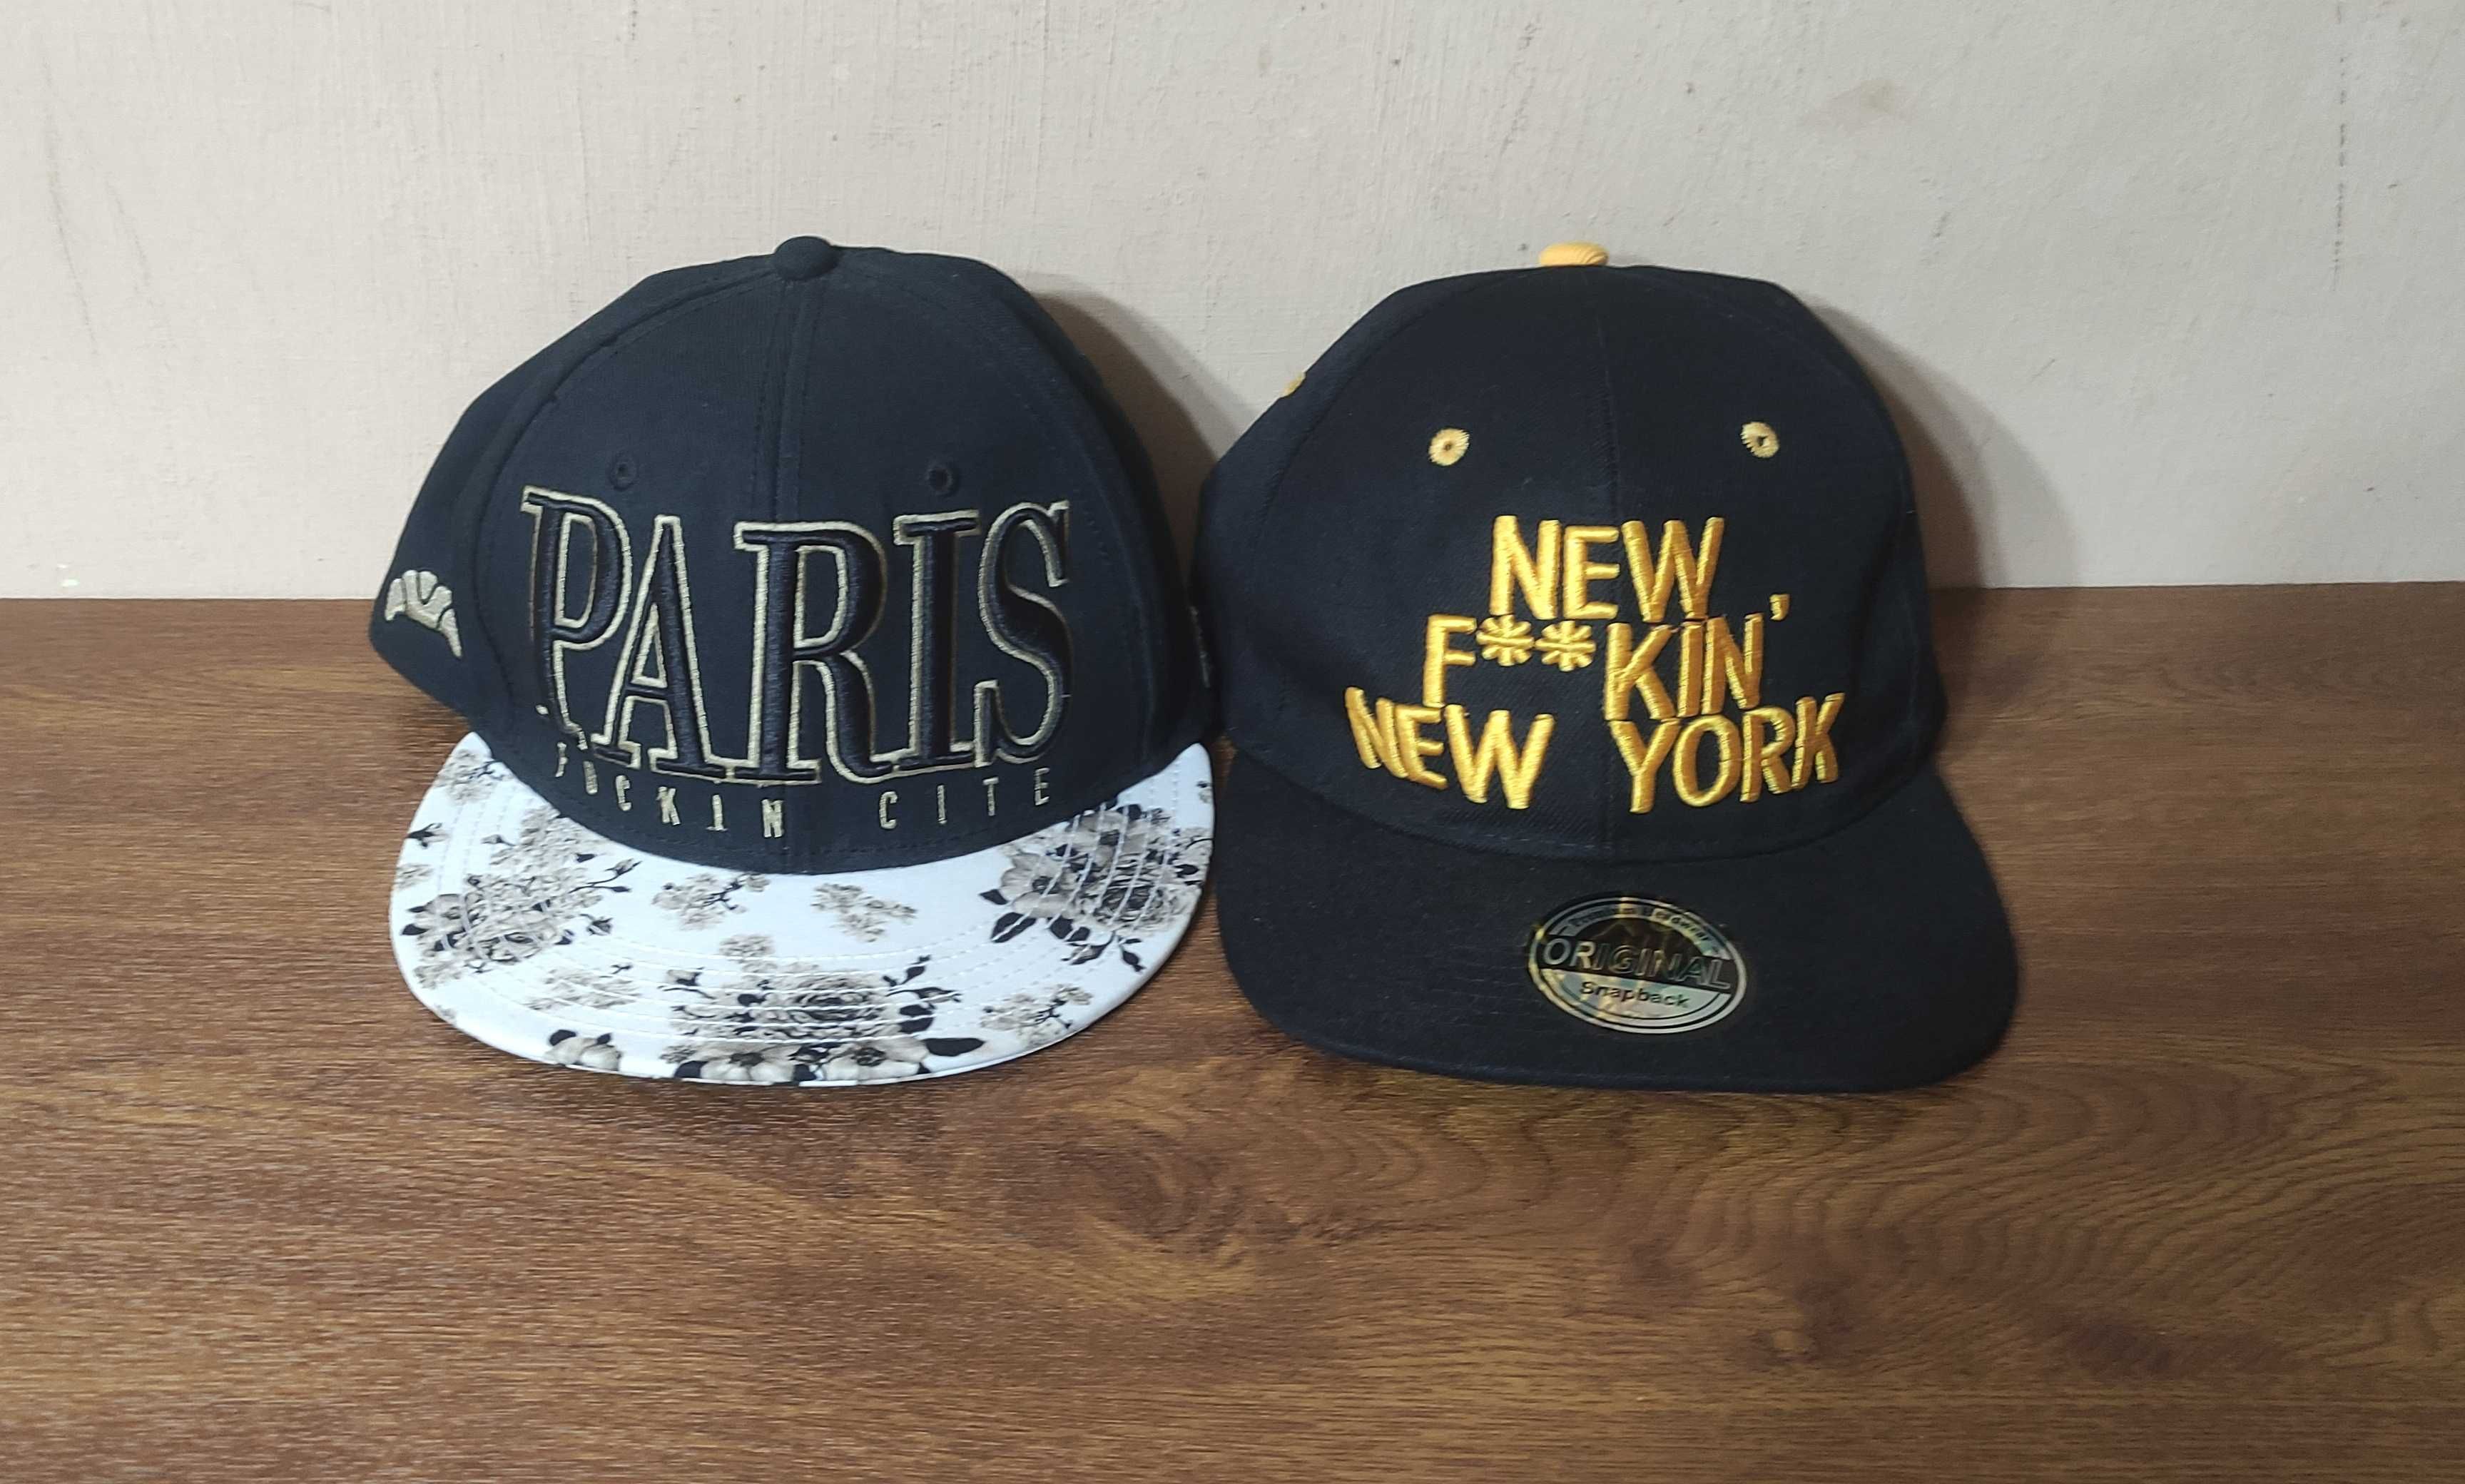 Două băști - Paris, fucking cite și New f**kin' New York